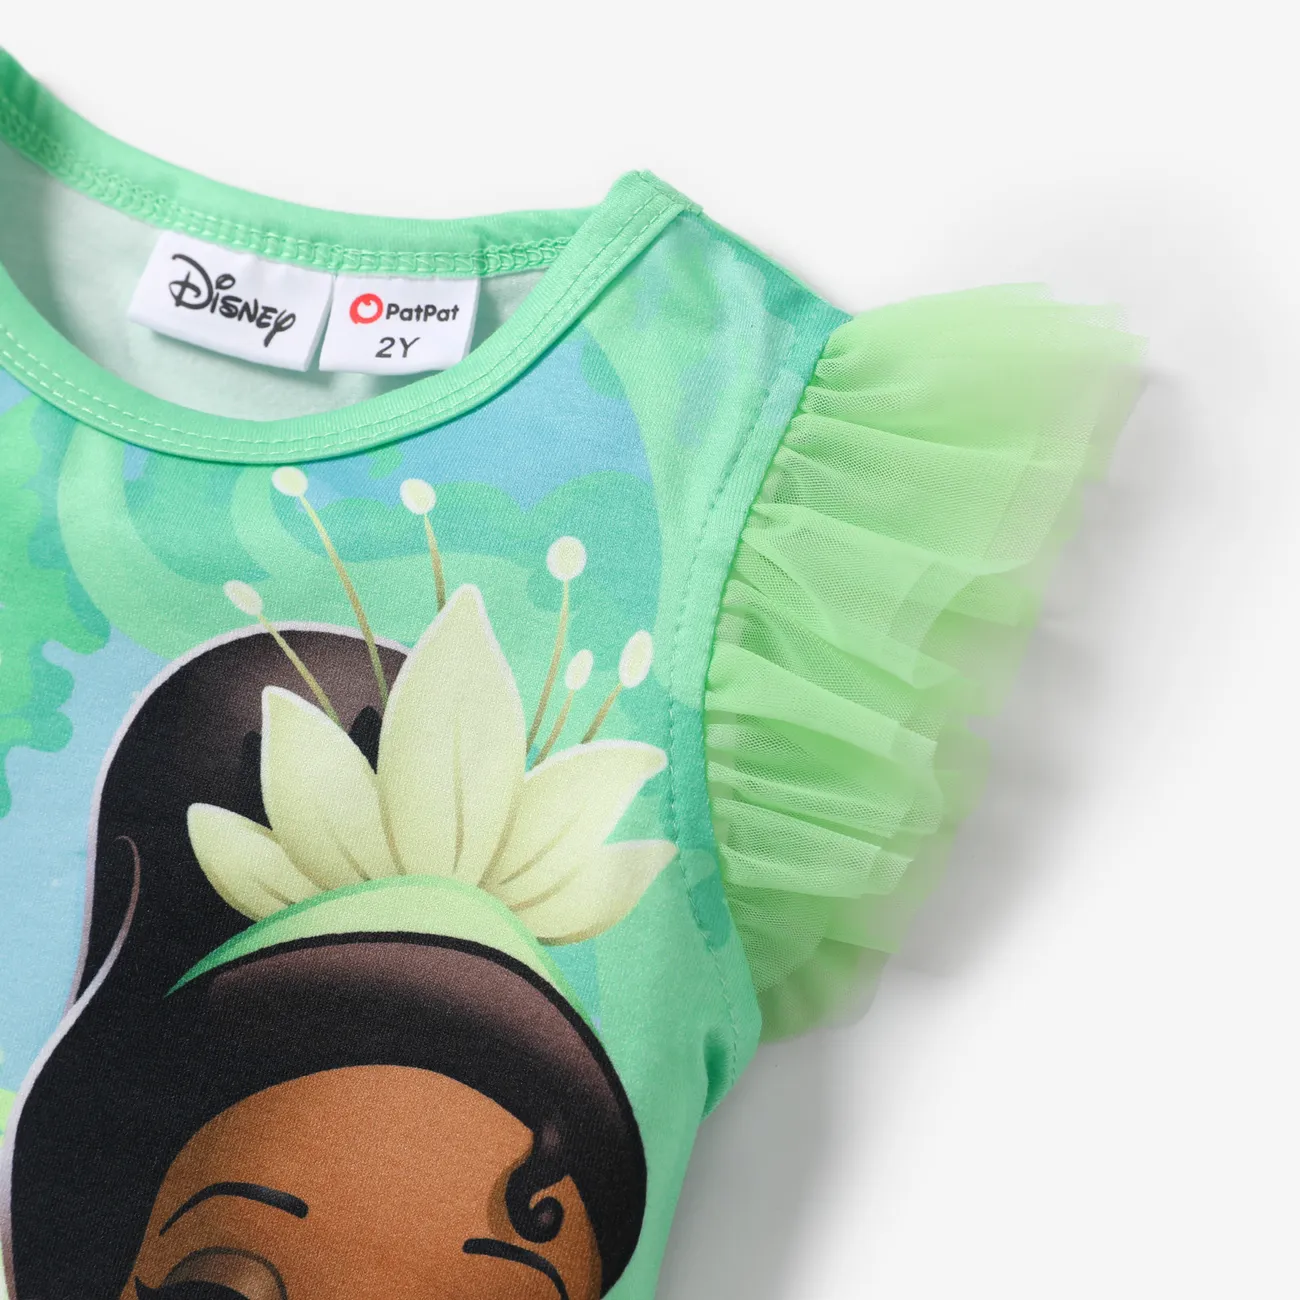 Disney Princess Toddler Girl Naia™ Character Print with Ruffled Mesh Sleeve Top Green big image 1